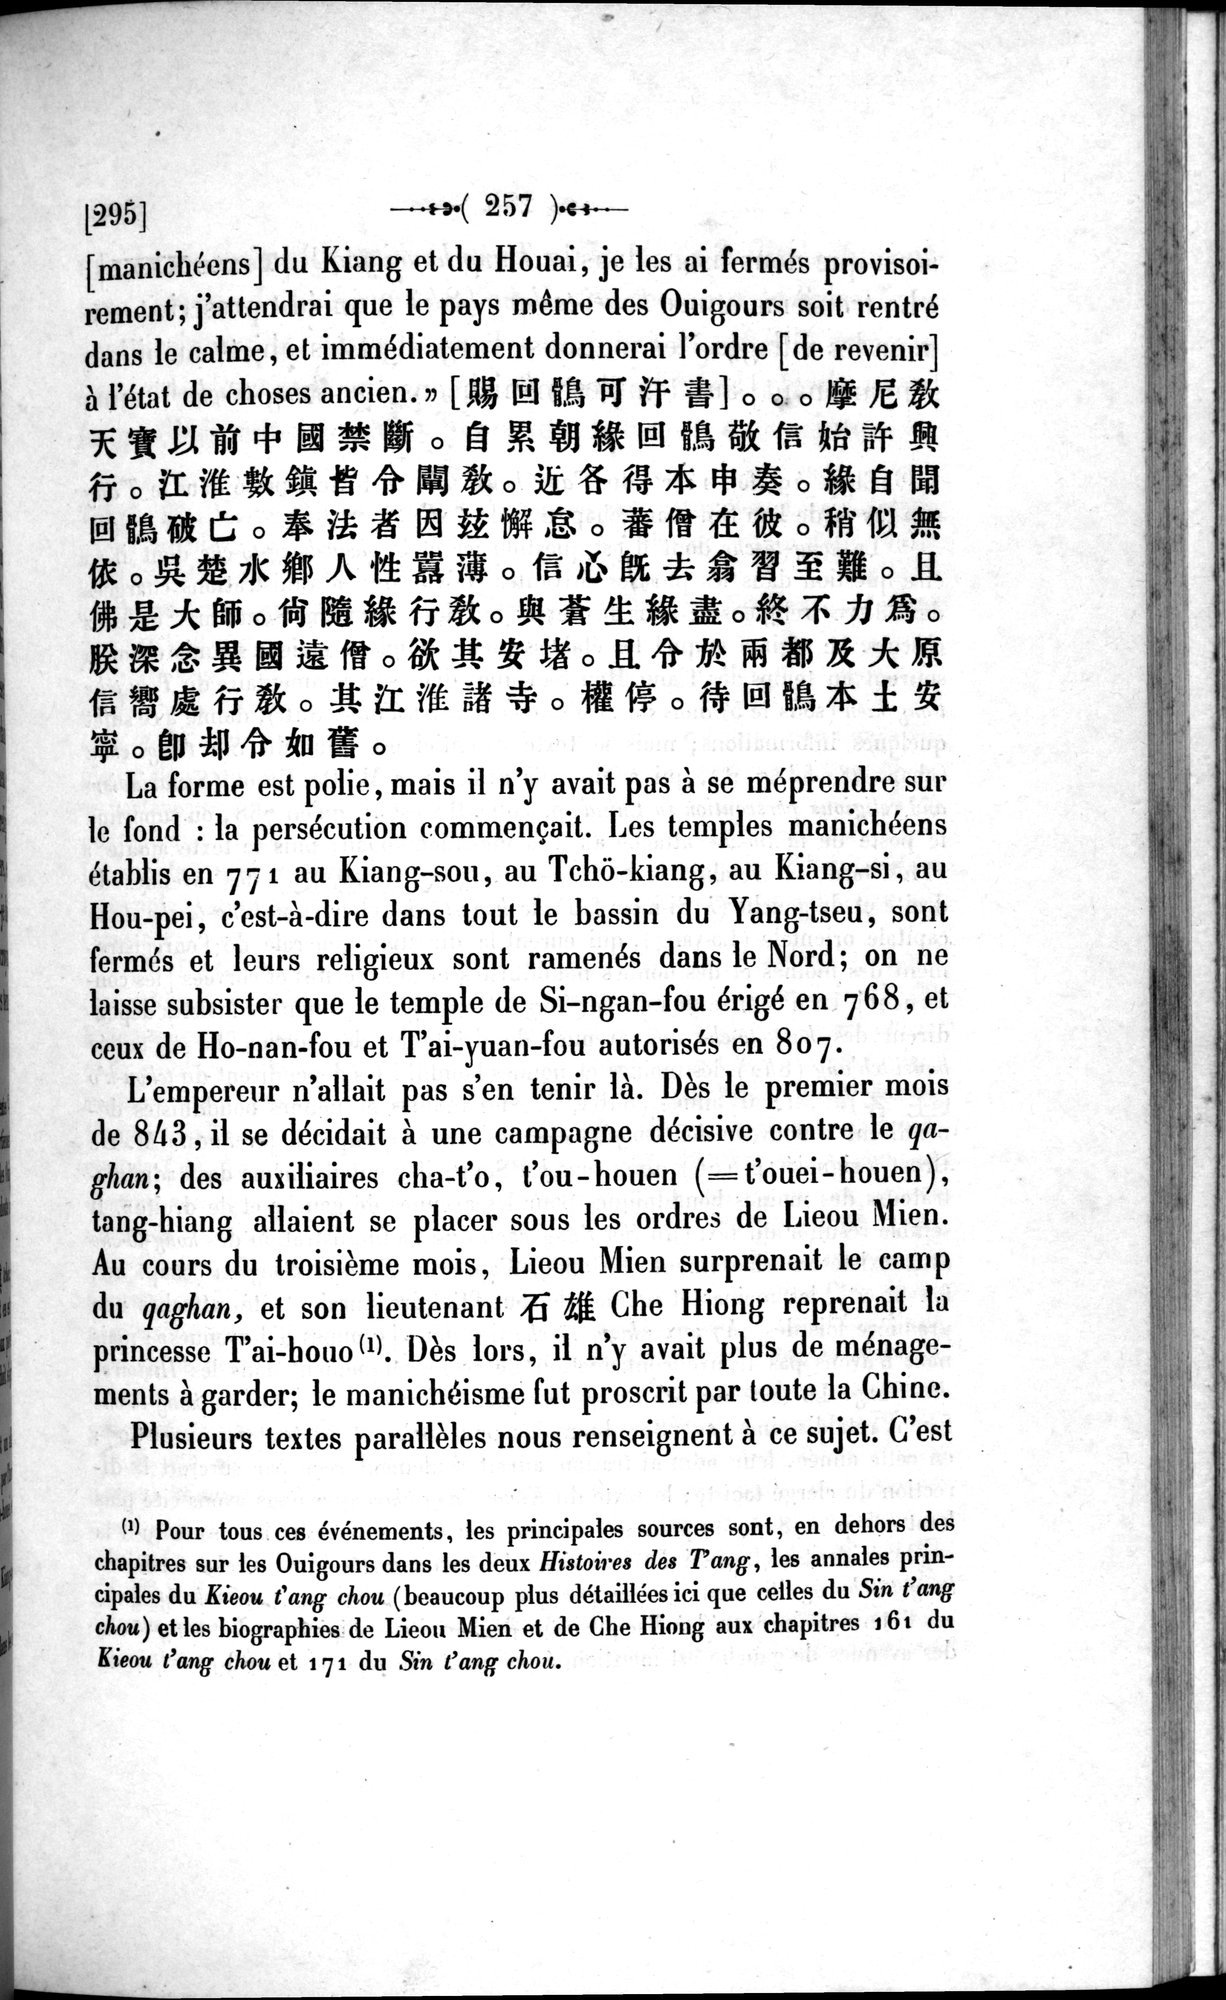 Un traité manichéen retrouvé en Chine : vol.1 / Page 267 (Grayscale High Resolution Image)